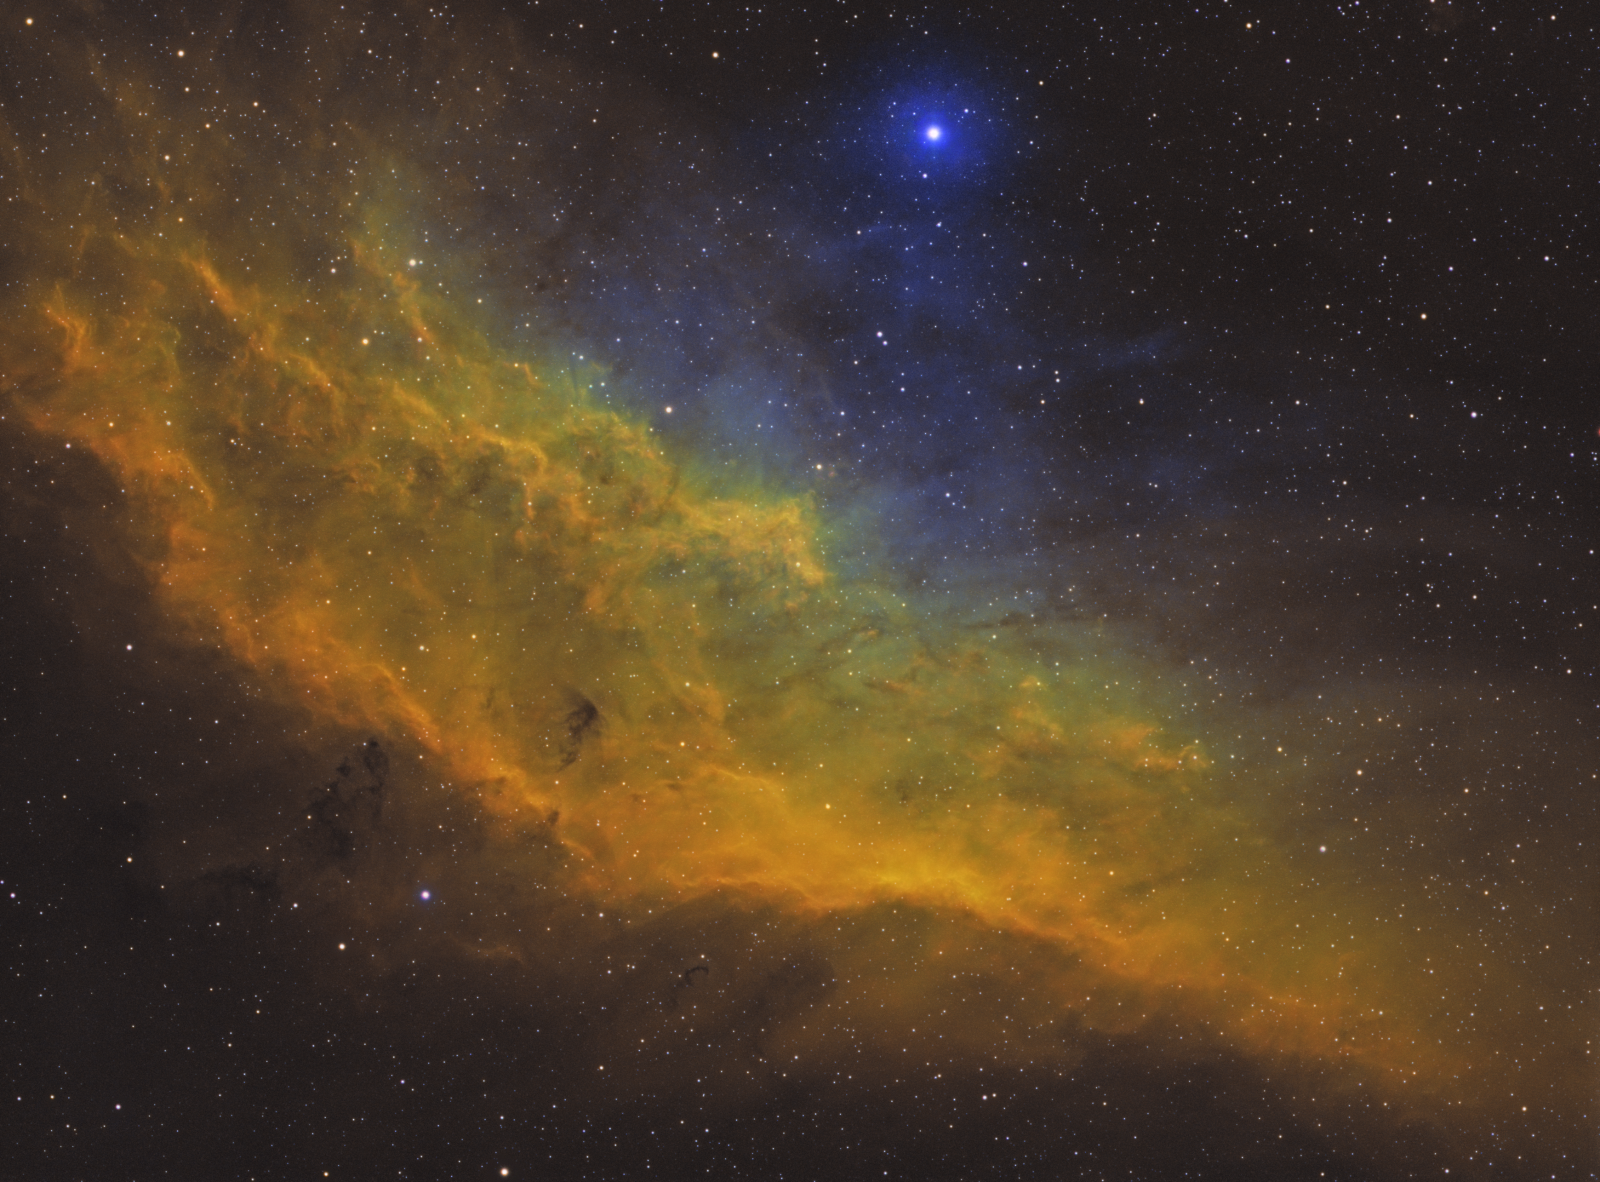 NGC1499_DISCO_VOLANTE.thumb.png.c8c0e556cdf7c11eb30d2b99c74ac44f.png